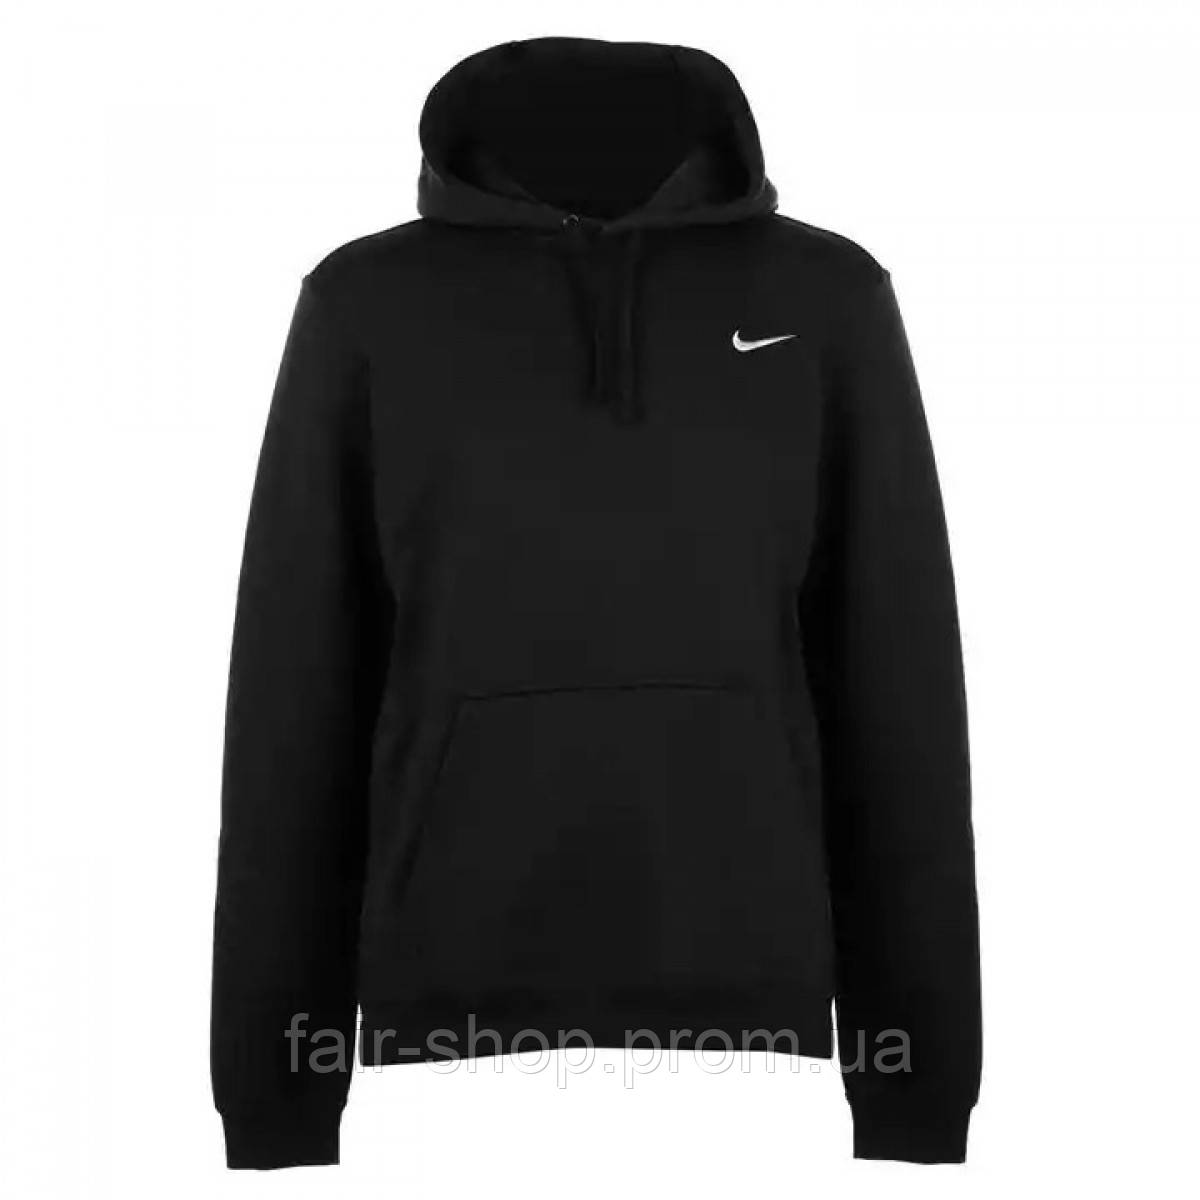 Худі Nike Fundamentals Fleece BLACK/BLACK/WHITE, оригінал. Доставка від 14 днів